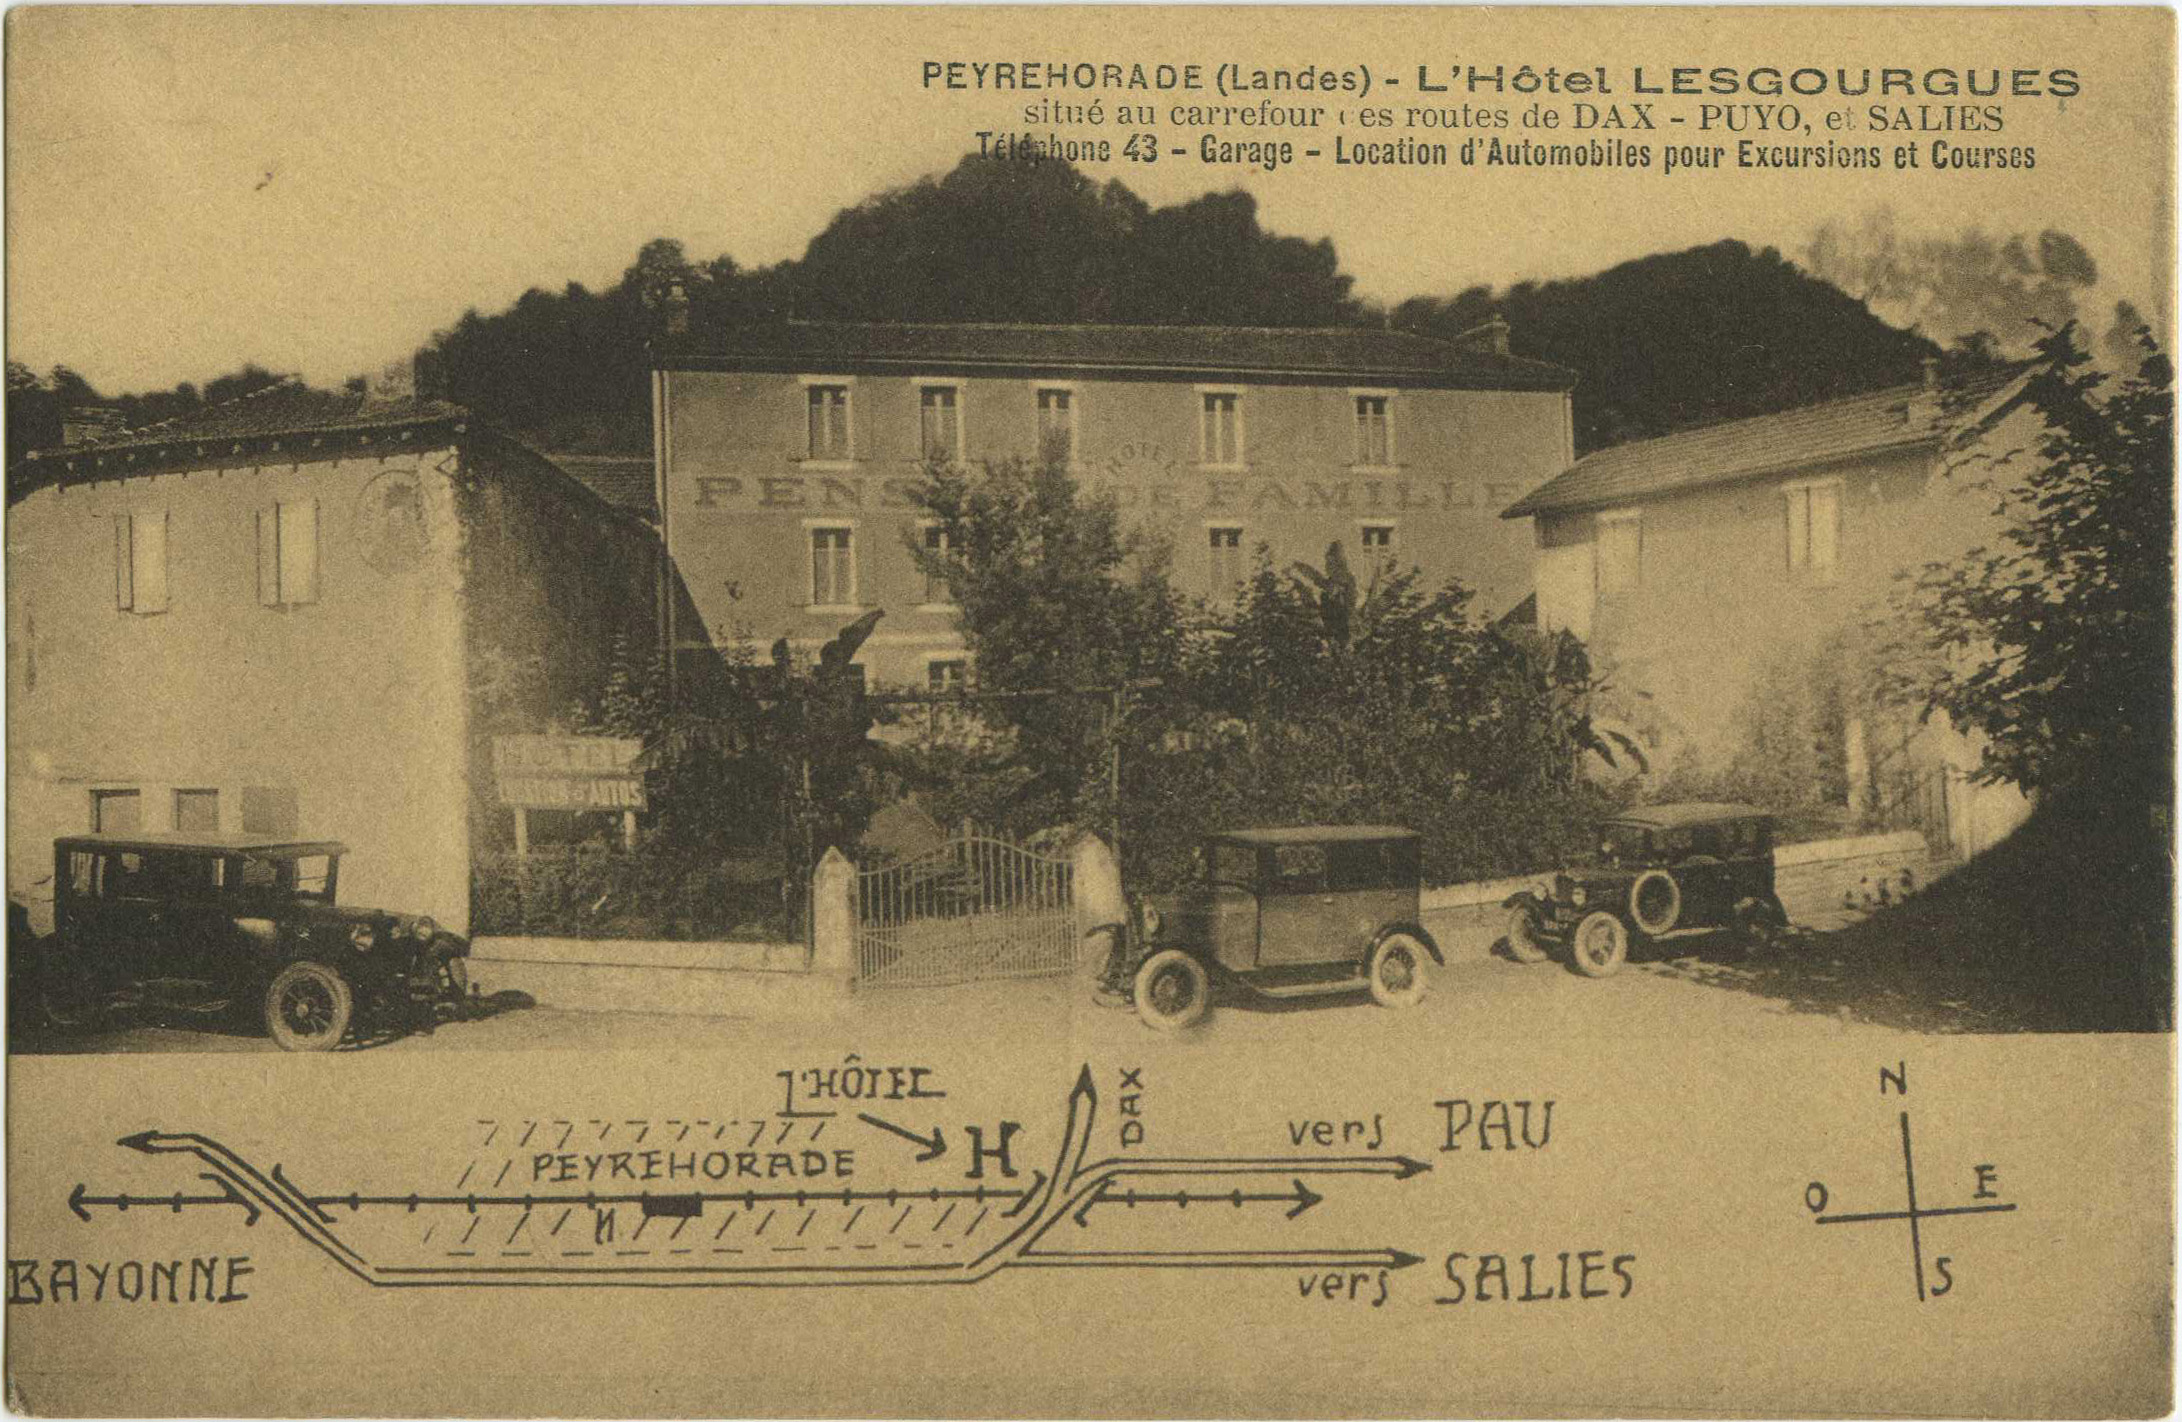 Peyrehorade - L'Hôtel LESGOURGUES situé au carrefour des routes de DAX - PUYO, et SALIES - Téléphone 43 - Garage - Location d'Automobiles pour Excursions et Courses